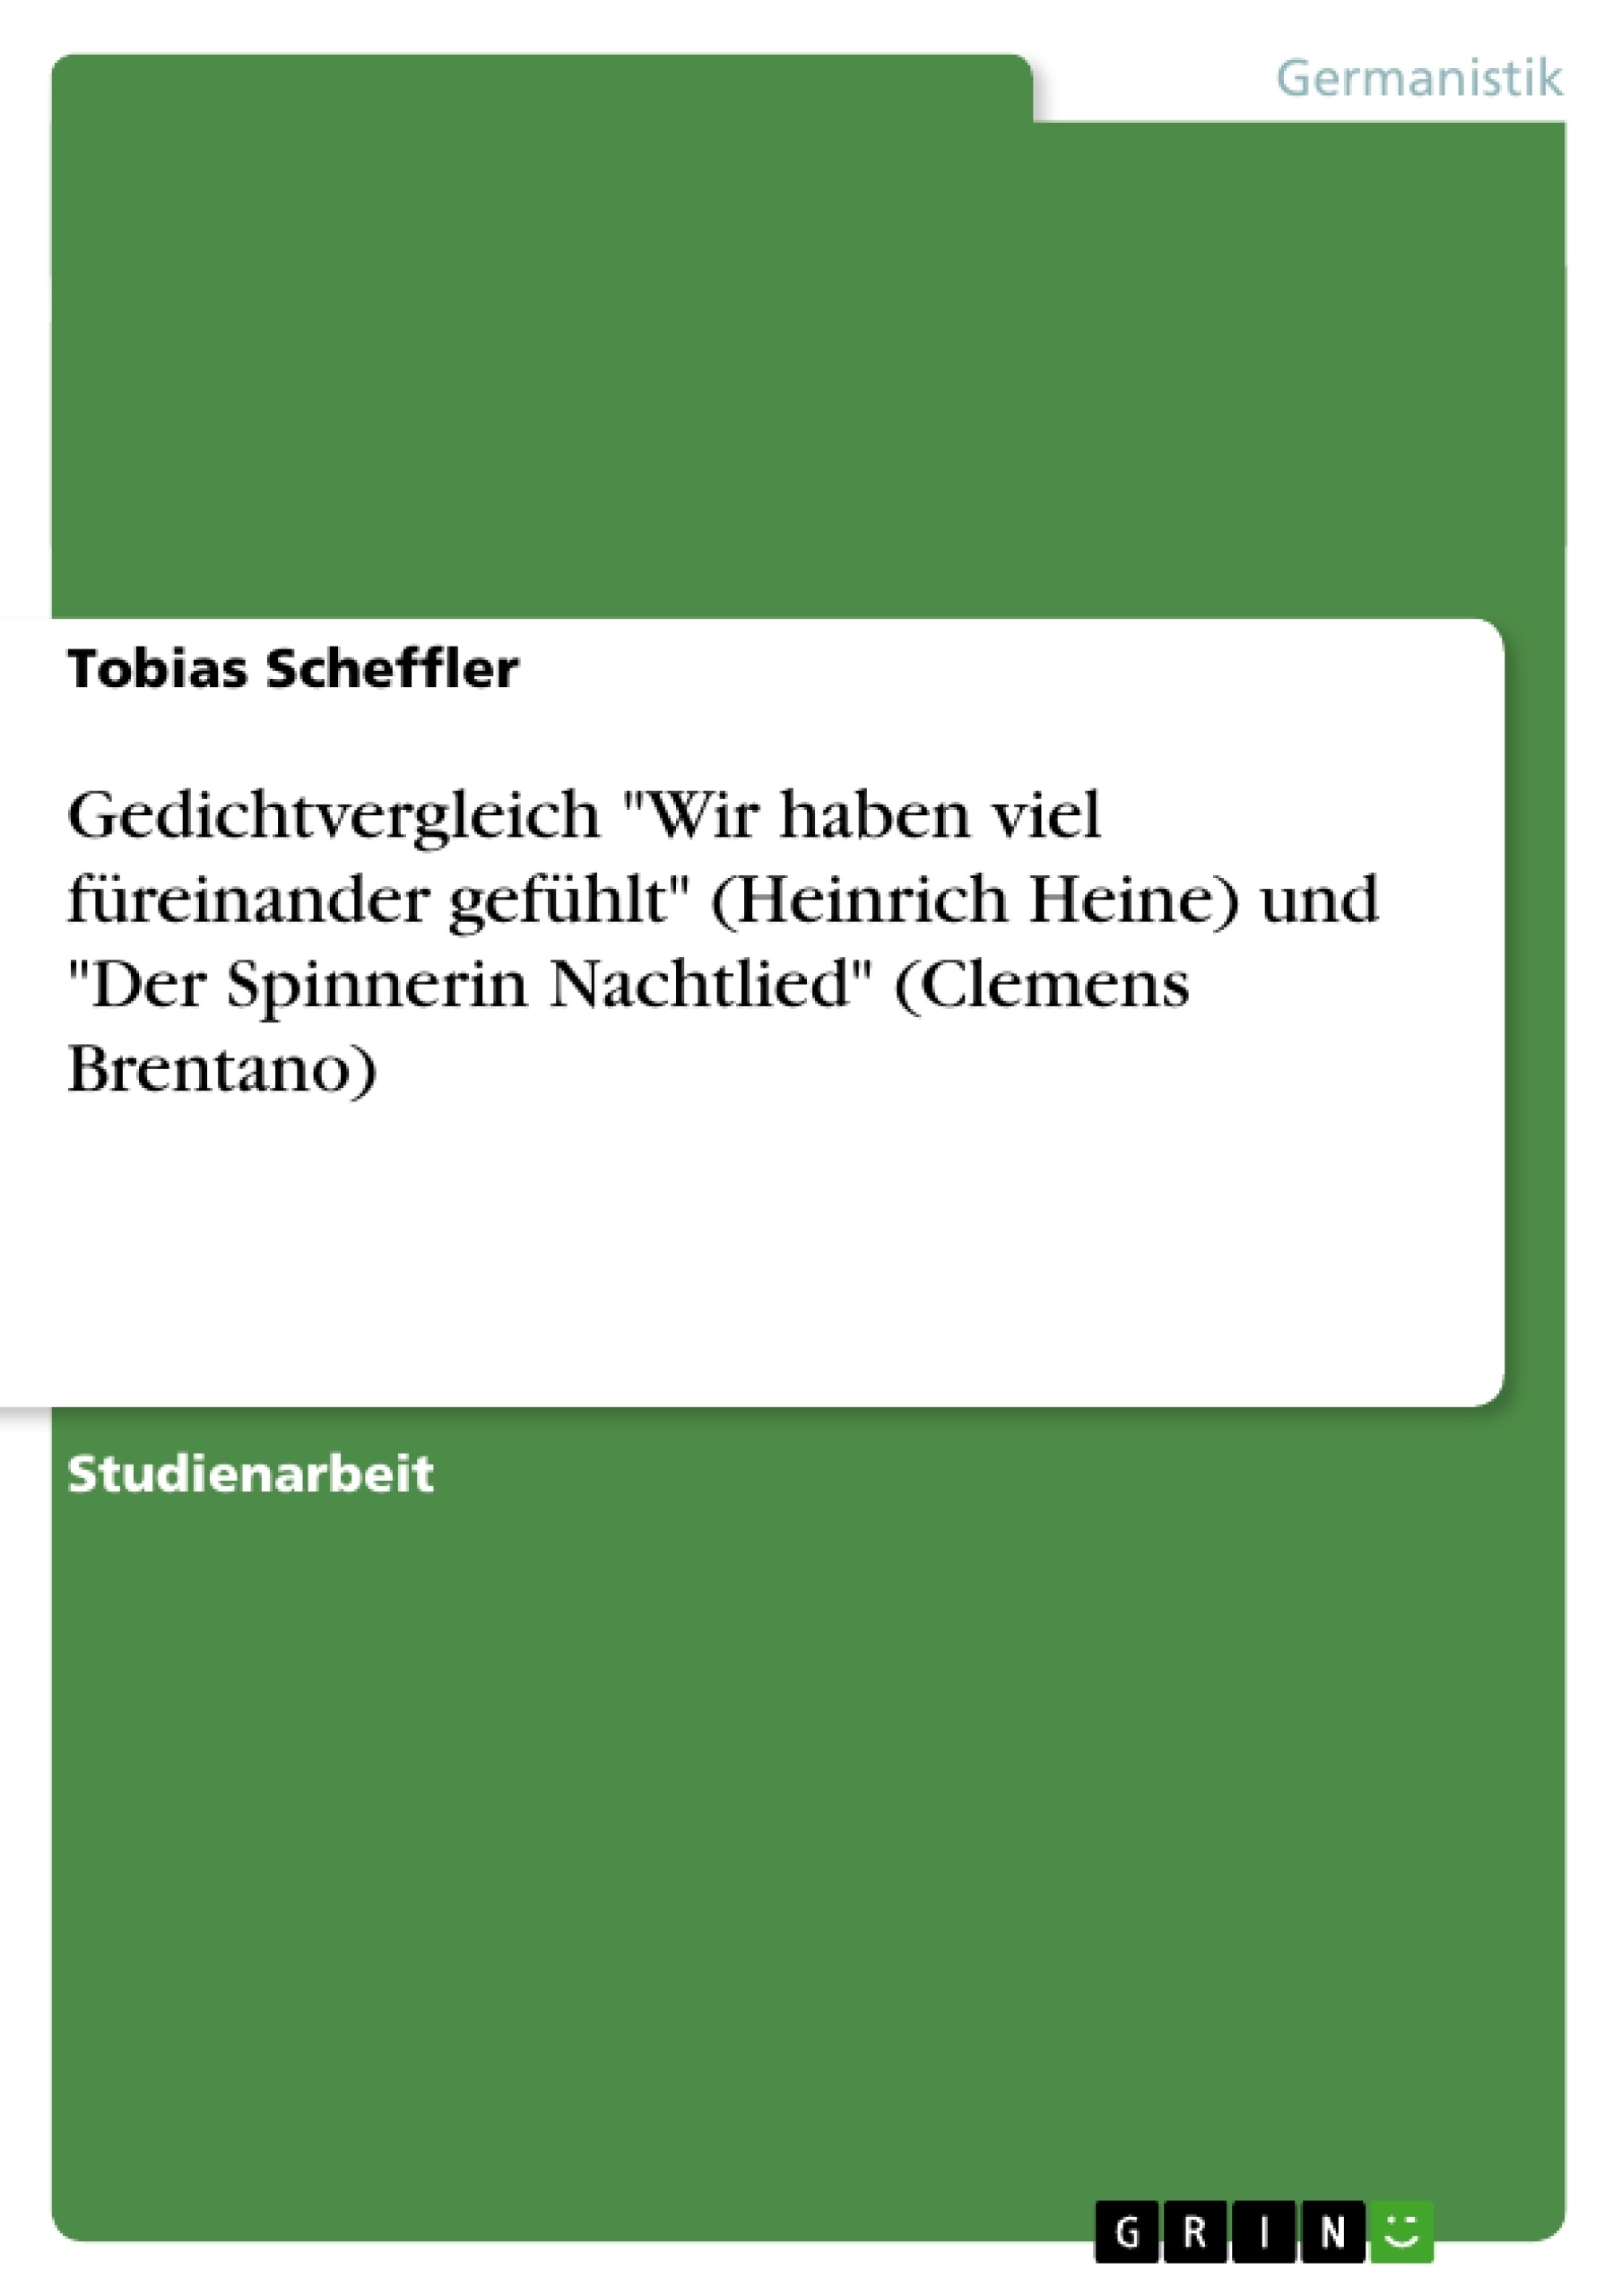 Title: Gedichtvergleich "Wir haben viel füreinander gefühlt" (Heinrich Heine) und "Der Spinnerin Nachtlied" (Clemens Brentano)